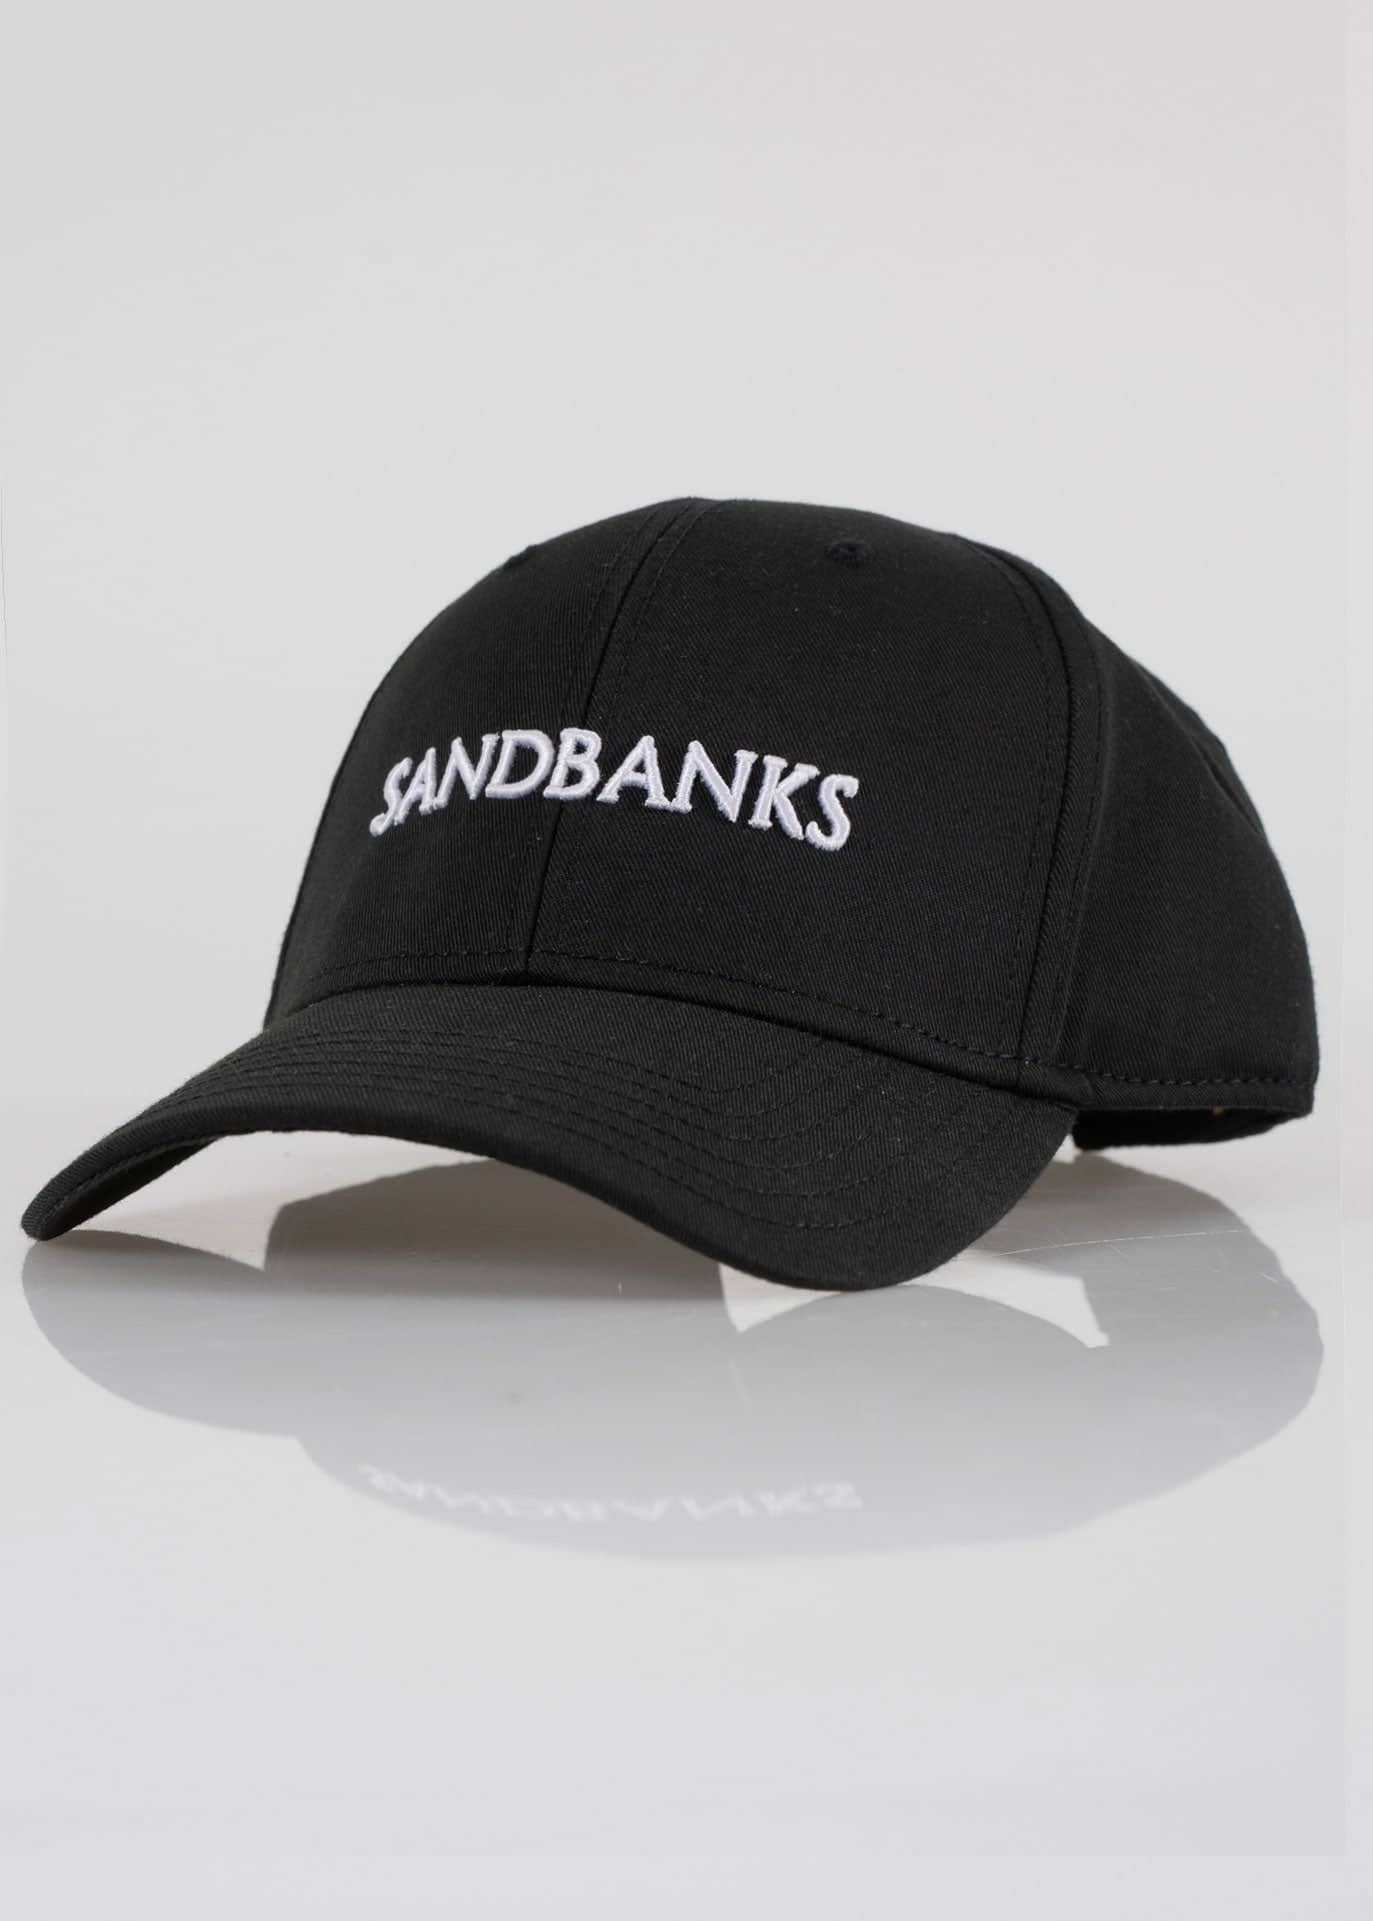 Sandbanks Logo Cap - sandbanksco.com